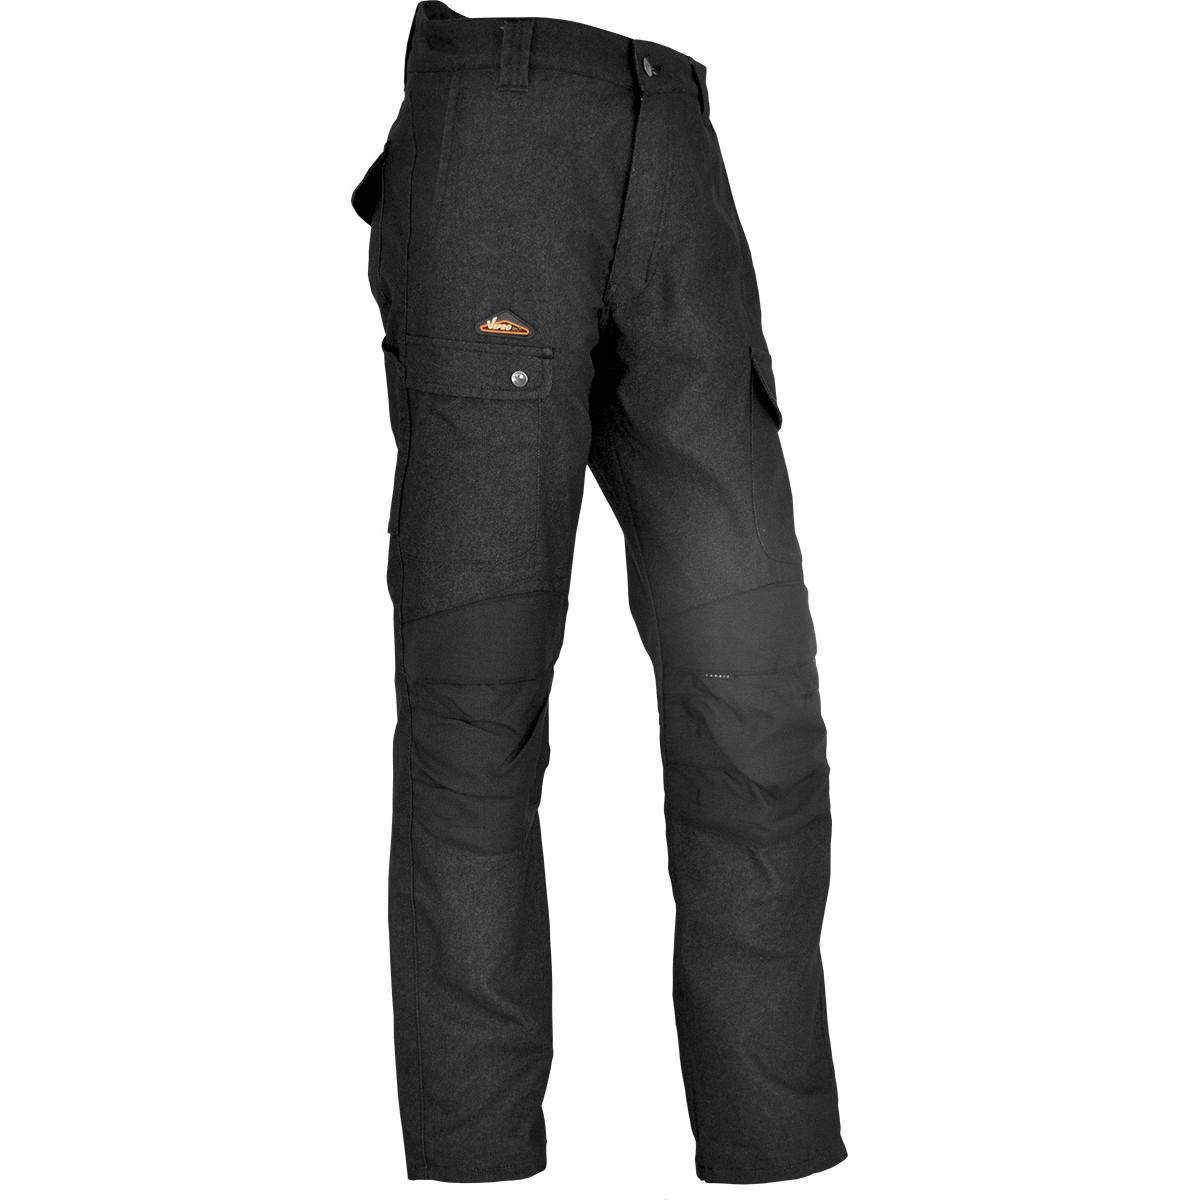 Pantalon de chantier ENDU Taille 40 noir, poches multiples, genouillères incluses